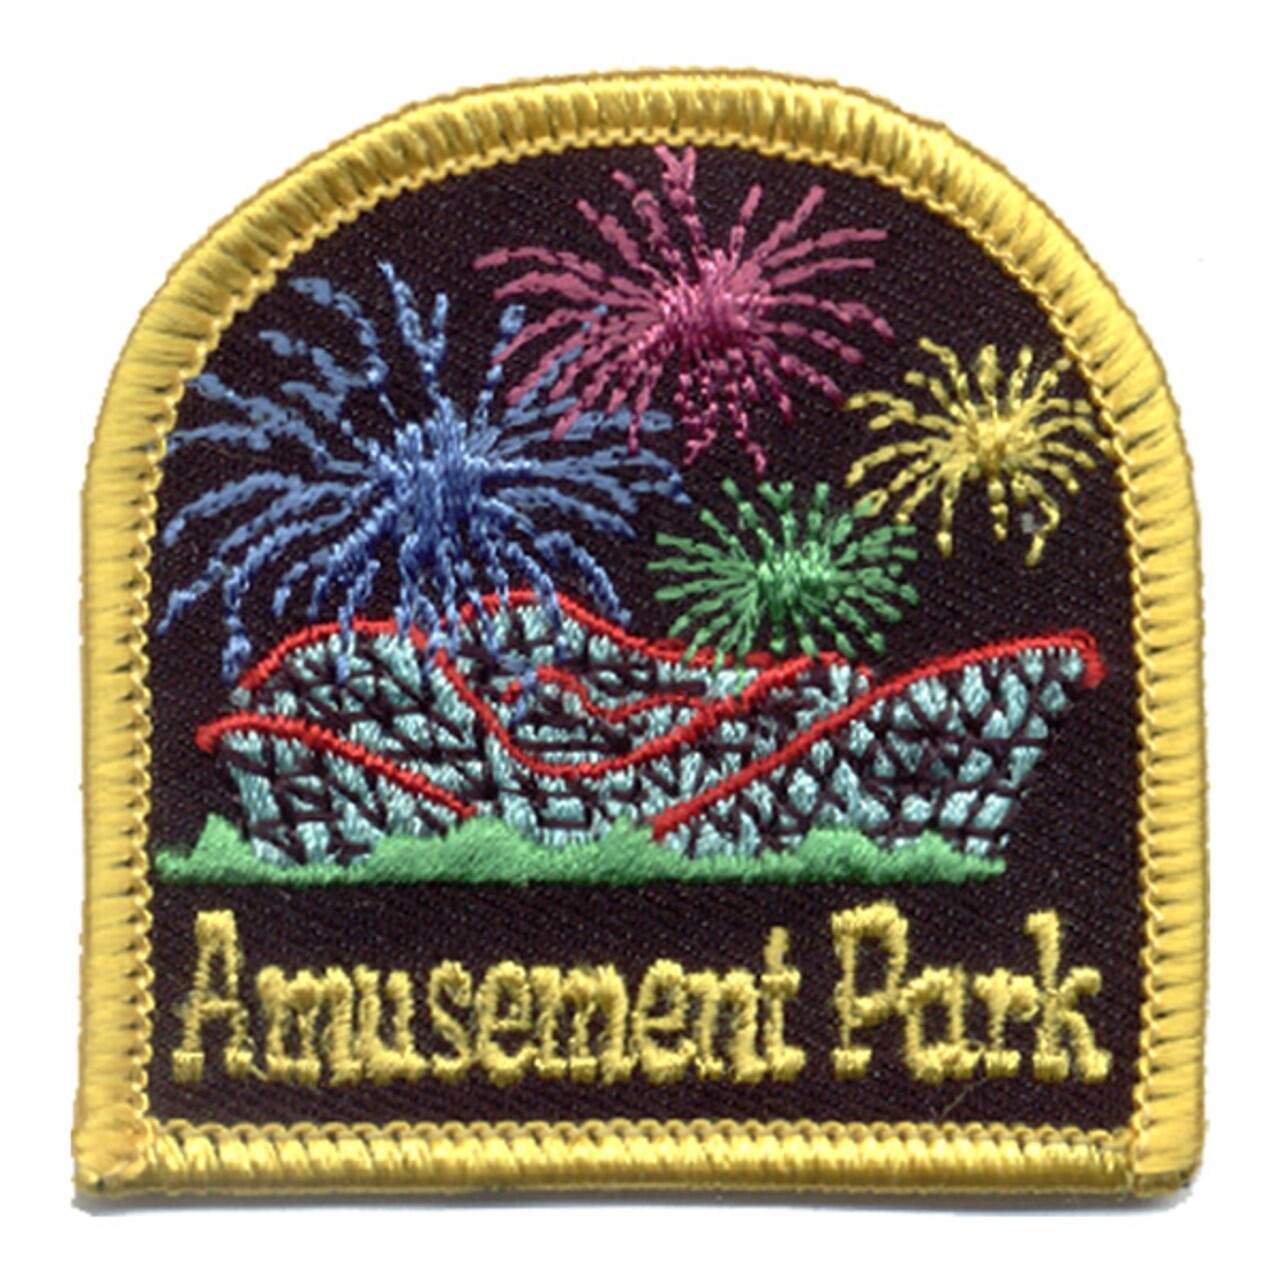 Amusement Park Patch